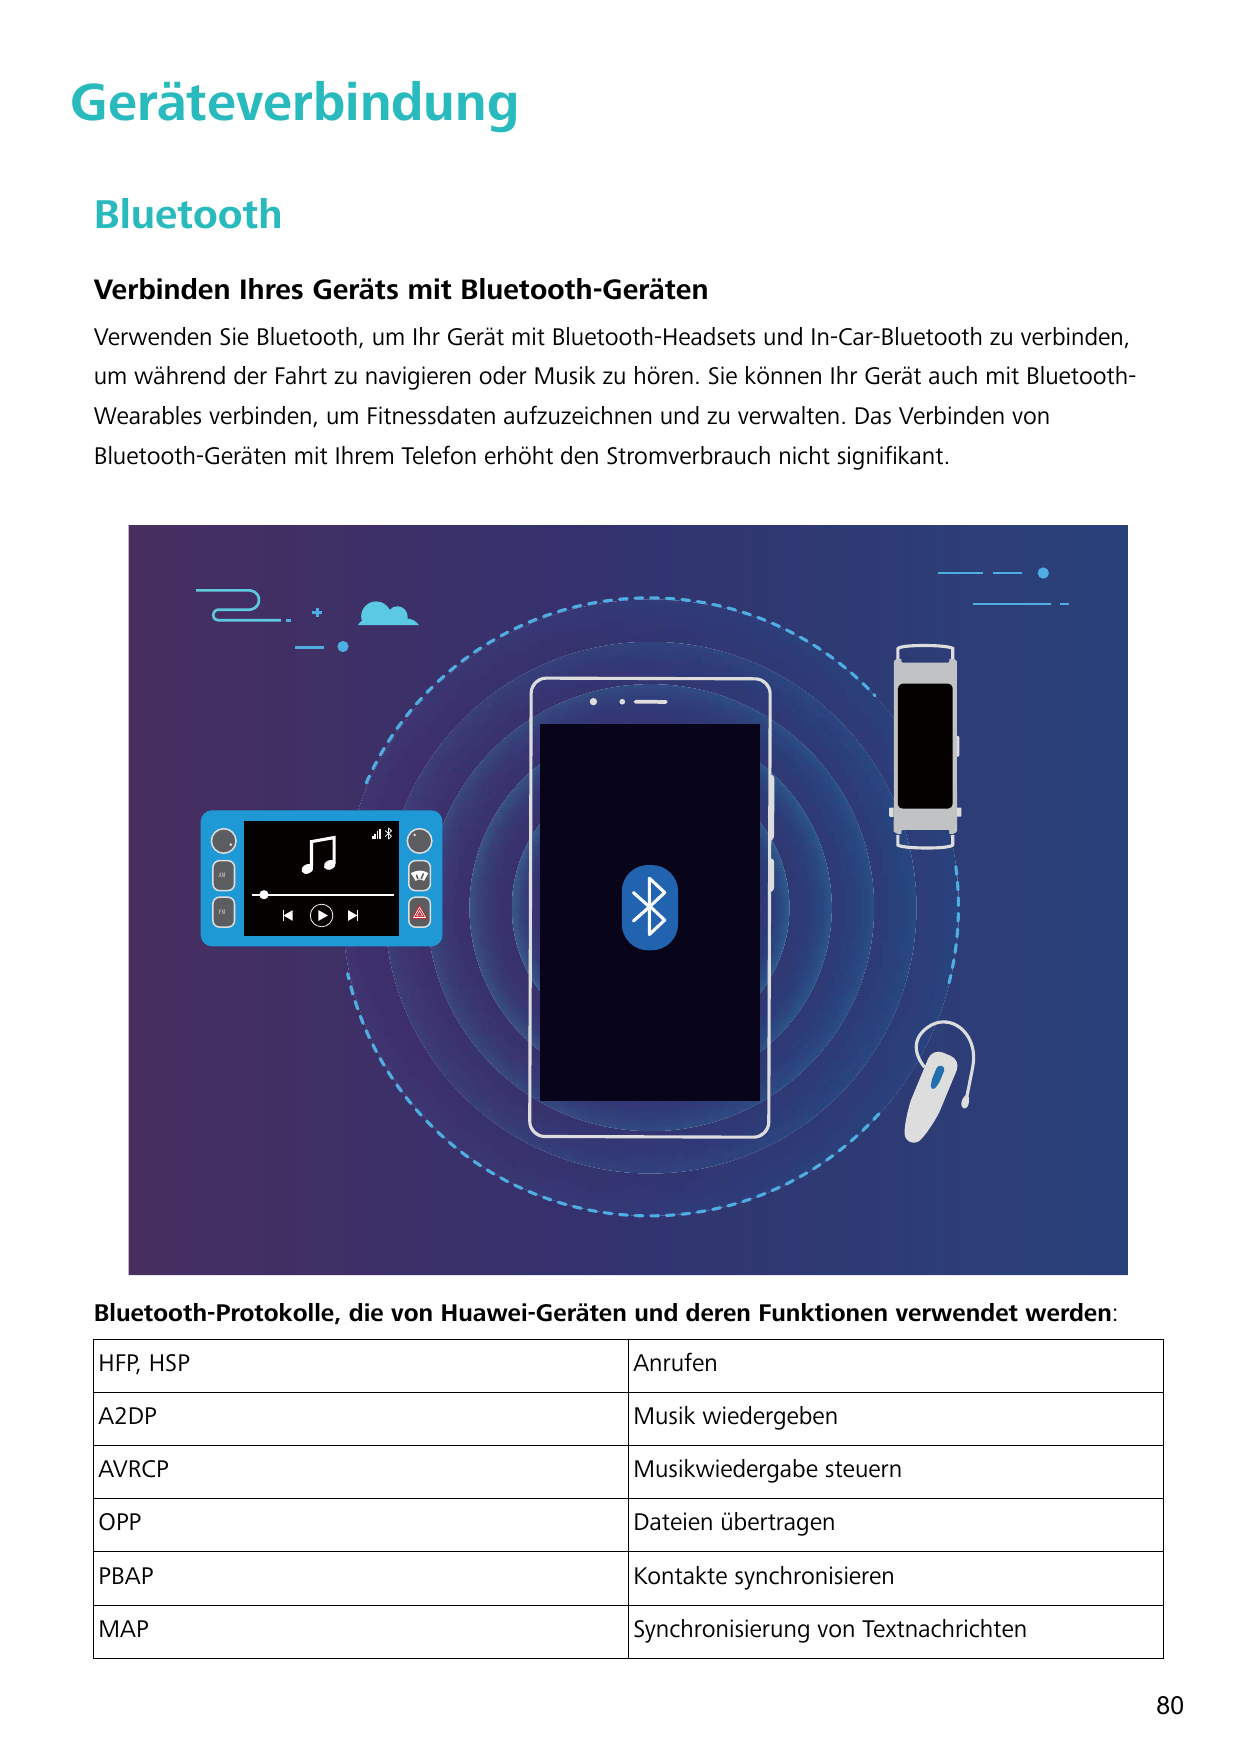 GeräteverbindungBluetoothVerbinden Ihres Geräts mit Bluetooth-GerätenVerwenden Sie Bluetooth, um Ihr Gerät mit Bluetooth-Headset